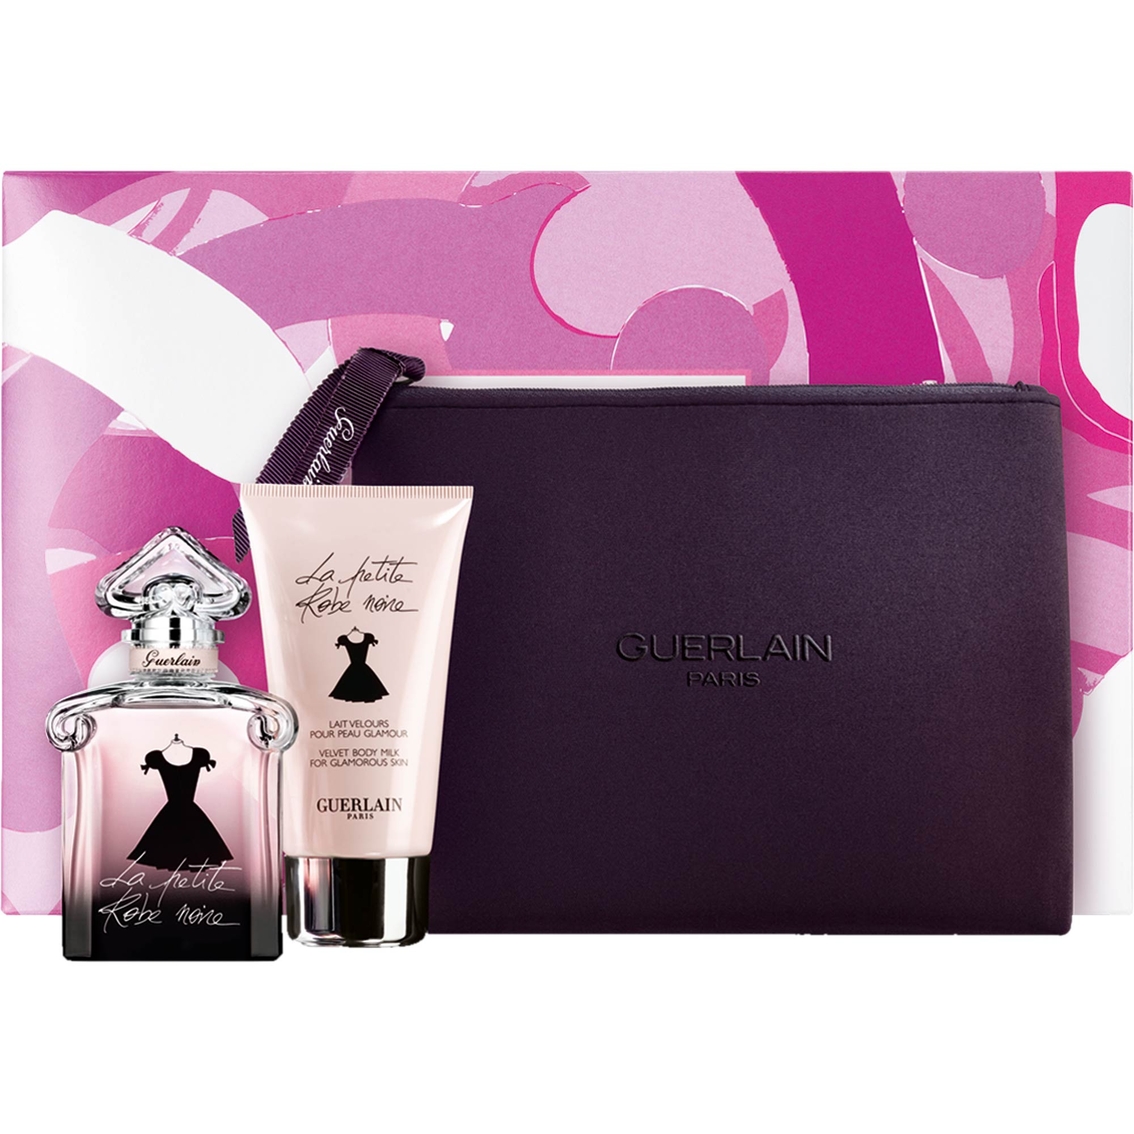 Guerlain Set La Petite Robe Noire Eau Fraiche | Gifts Sets For Her ...